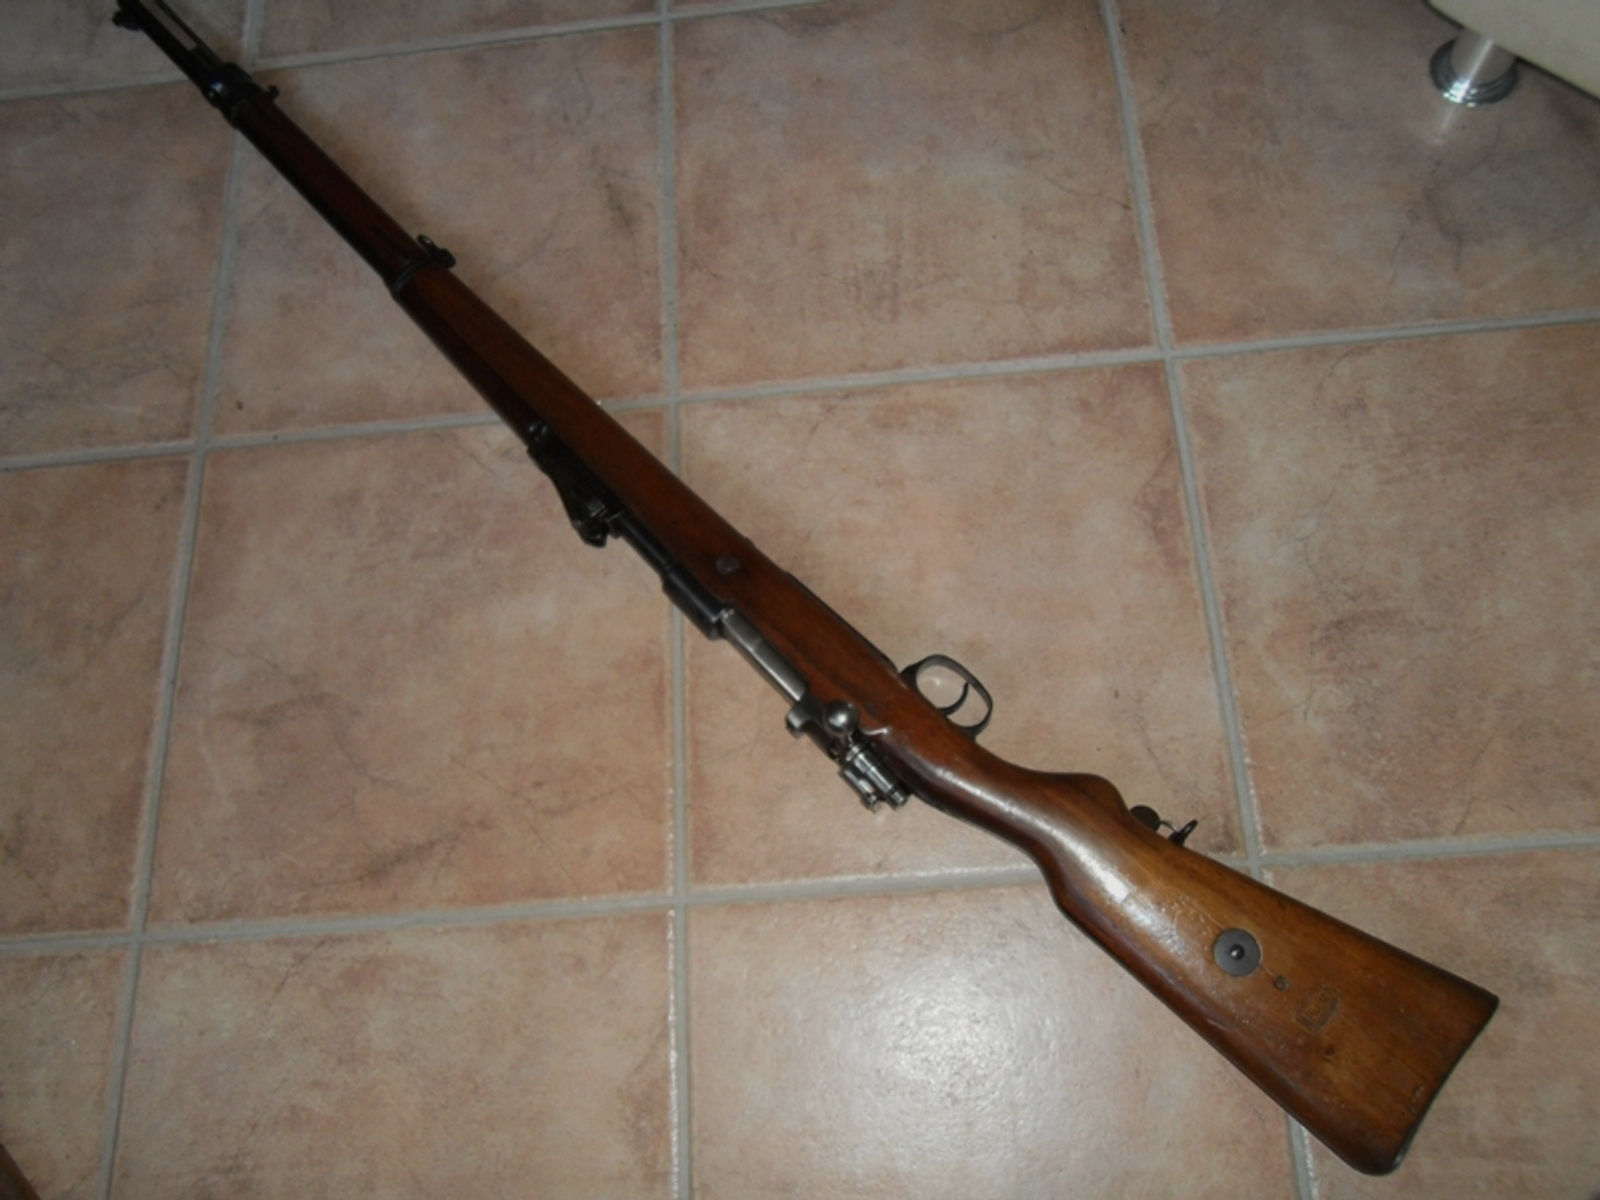 Peruanisches Gewehr Model 1909 (Peru-Mauser). Herstellerbeschriftung links auf Systemhülse: "WAFFENF